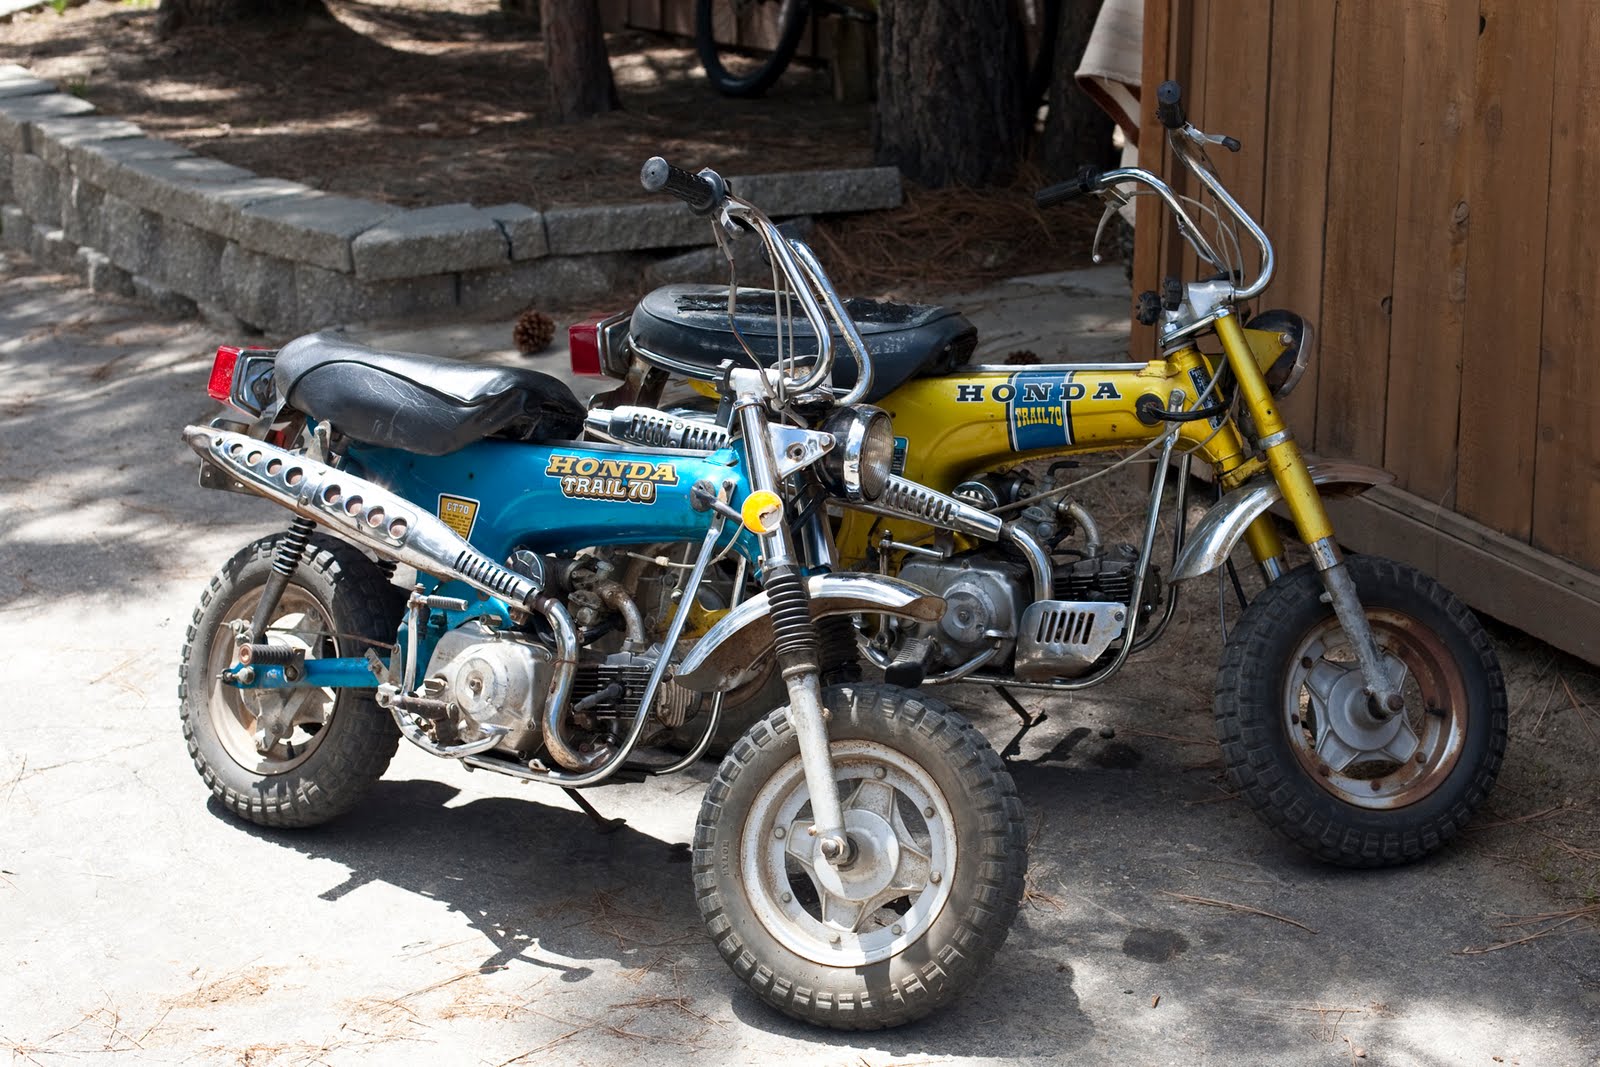 Honda CT70 motorcycles.